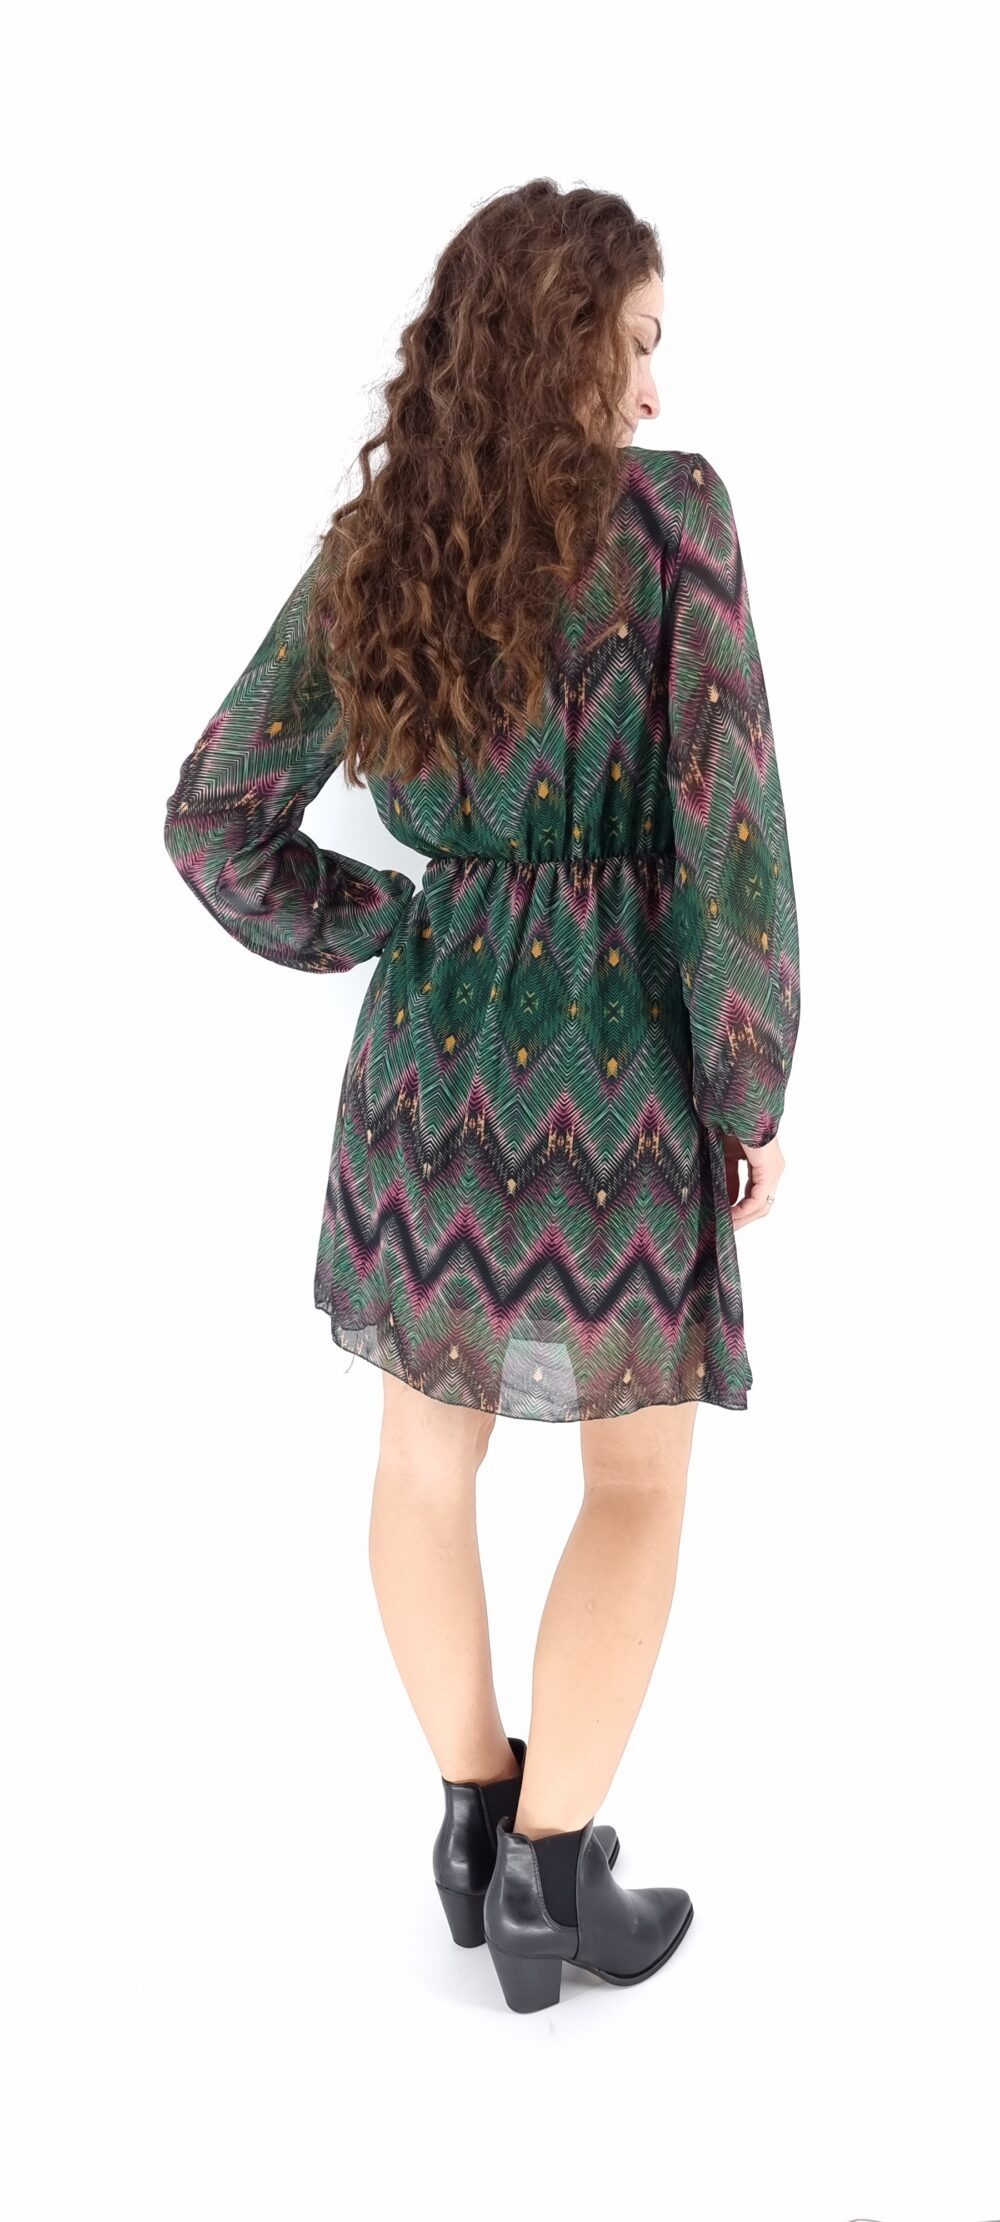 Φόρεμα κοντό κρουαζέ με πολύχρωμο μοτίβο σε πράσινες αποχρώσεις